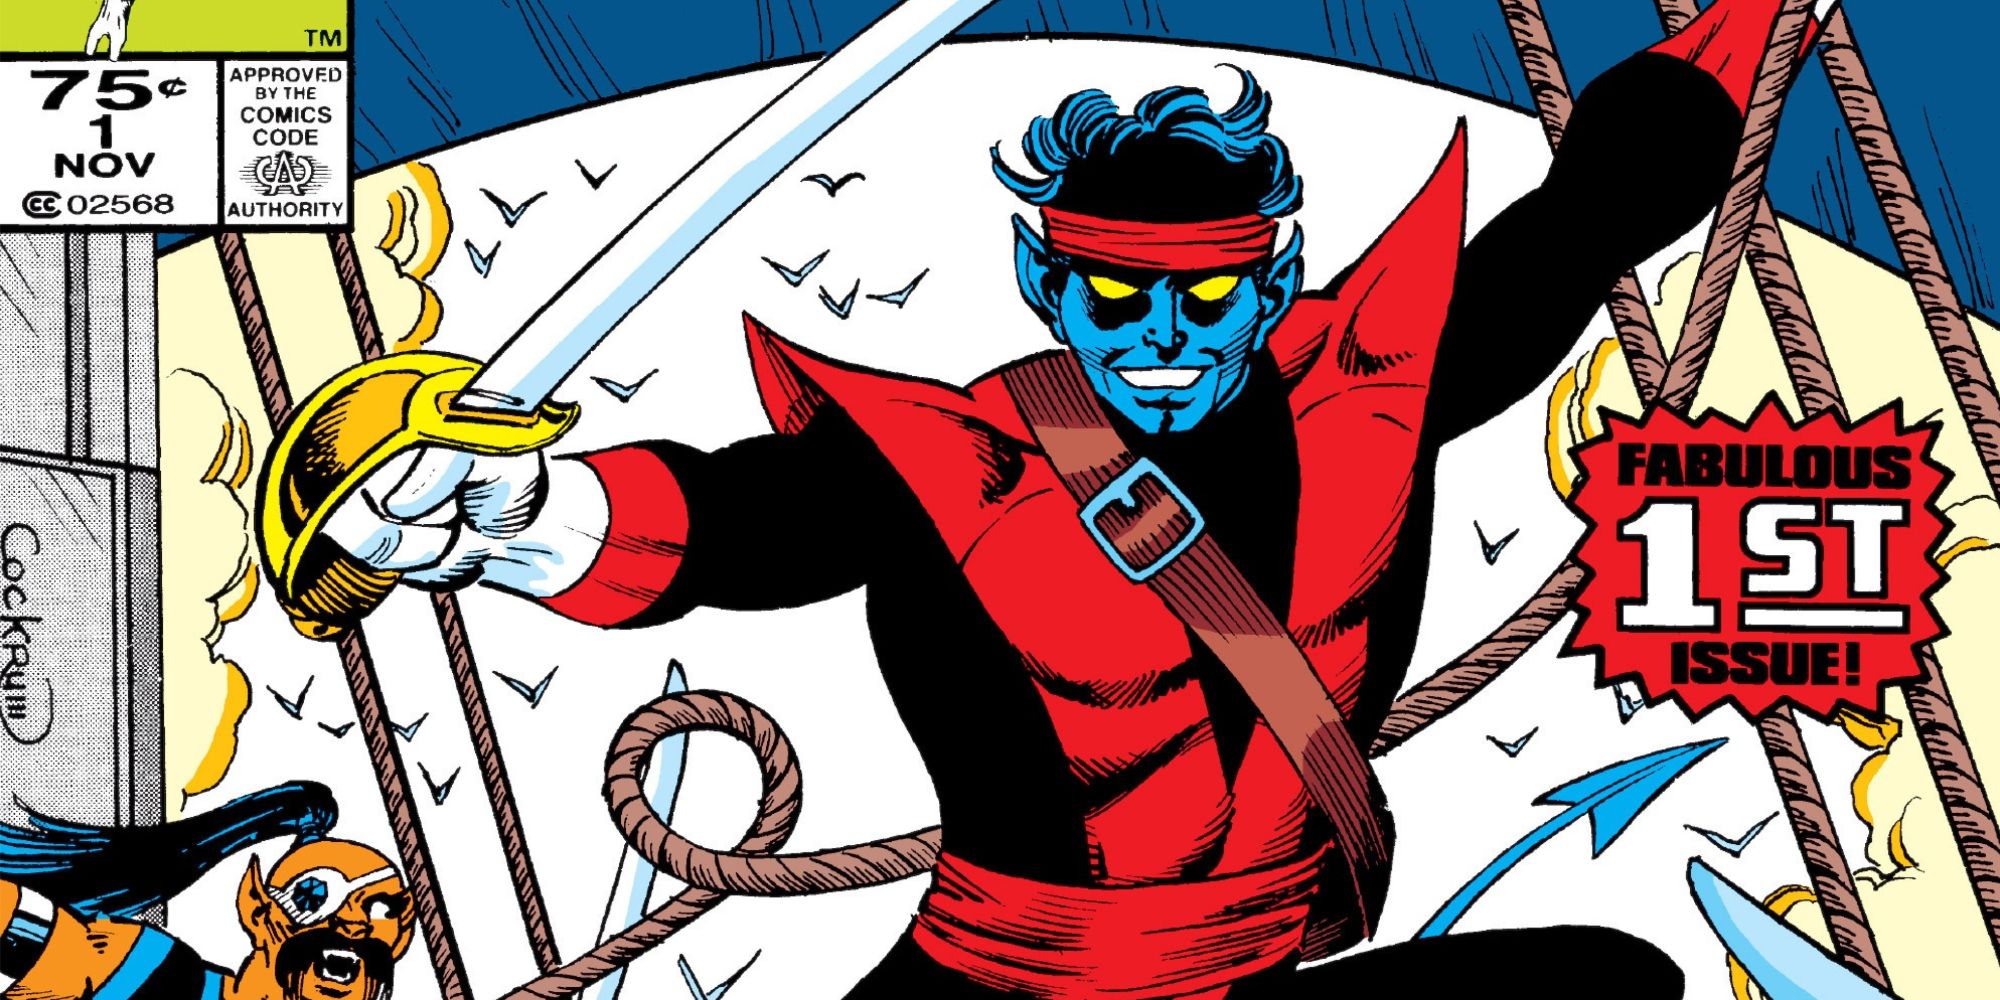 Nightcrawler appears as a pirate in Nightcrawler #1 (1985).